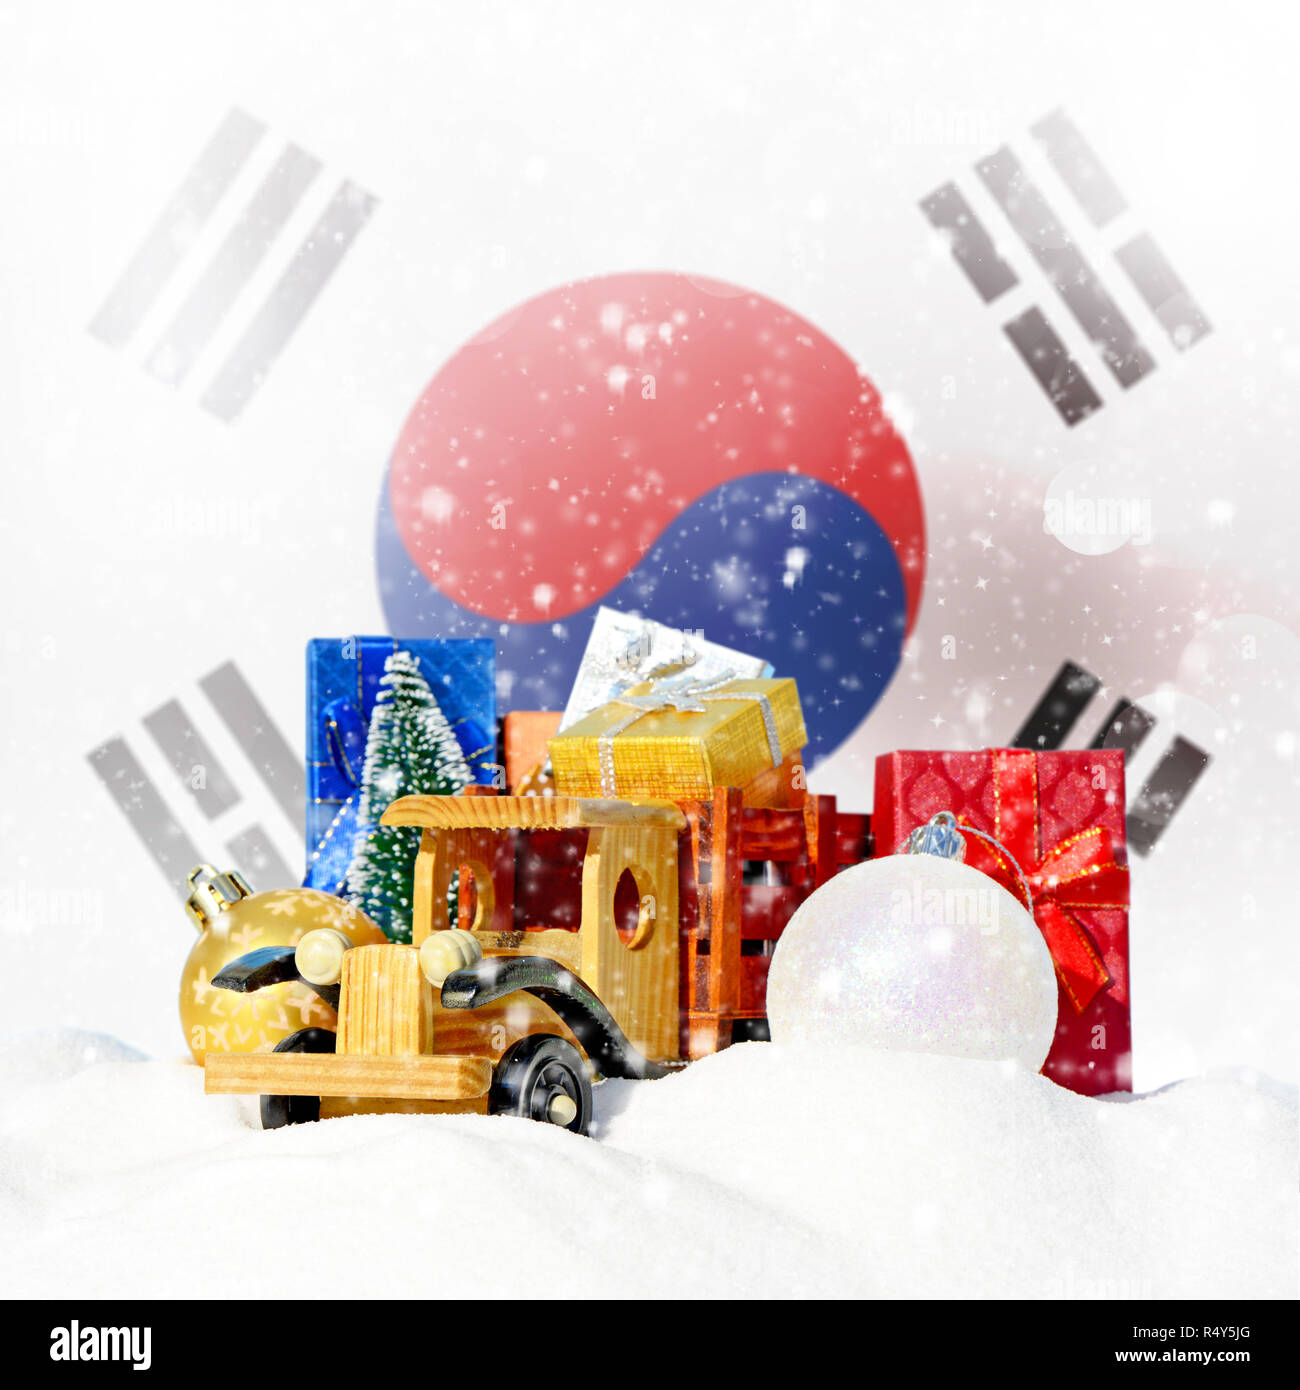 Weihnachten Hintergrund. Spielzeug-LKW mit Geschenken, Neues Jahr Tanne, Kugeln im Schneetreiben und Südkorea Flagge Stockfoto